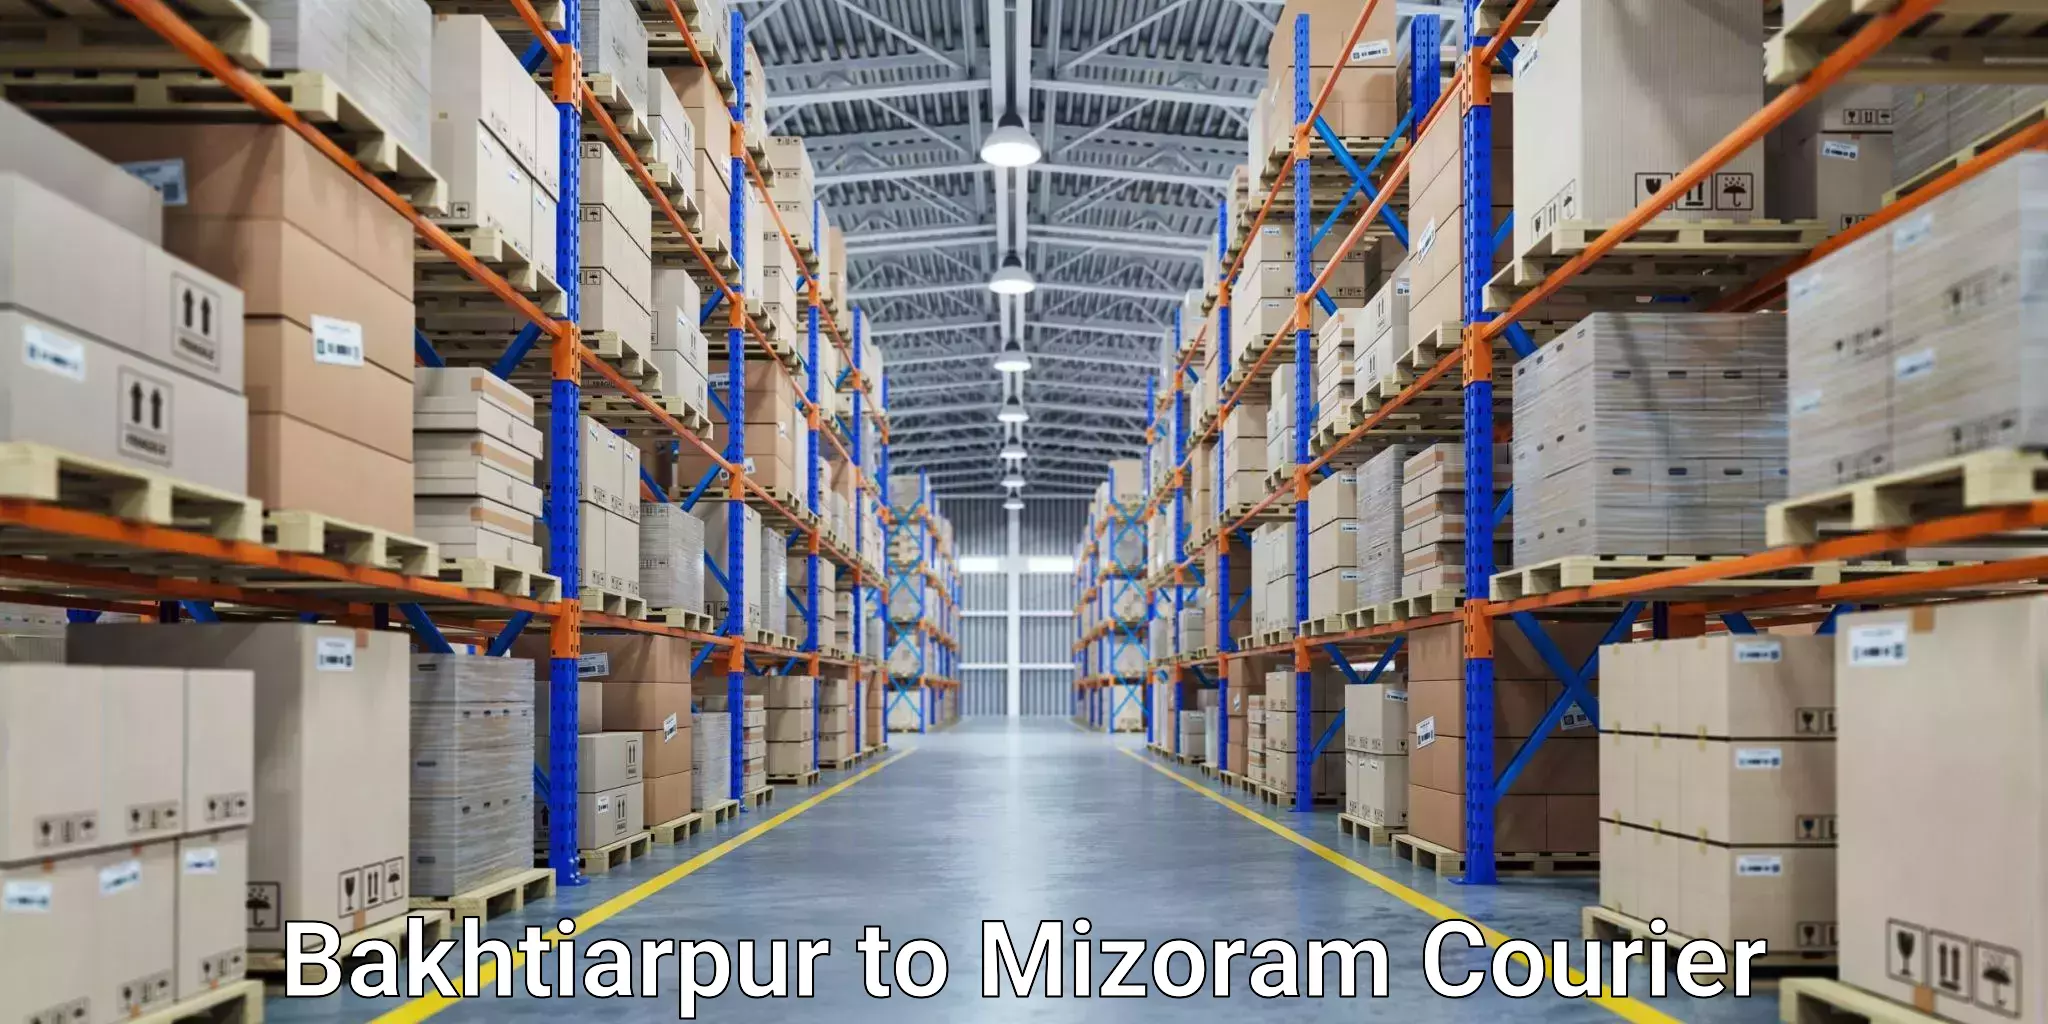 Nationwide parcel services Bakhtiarpur to Mizoram